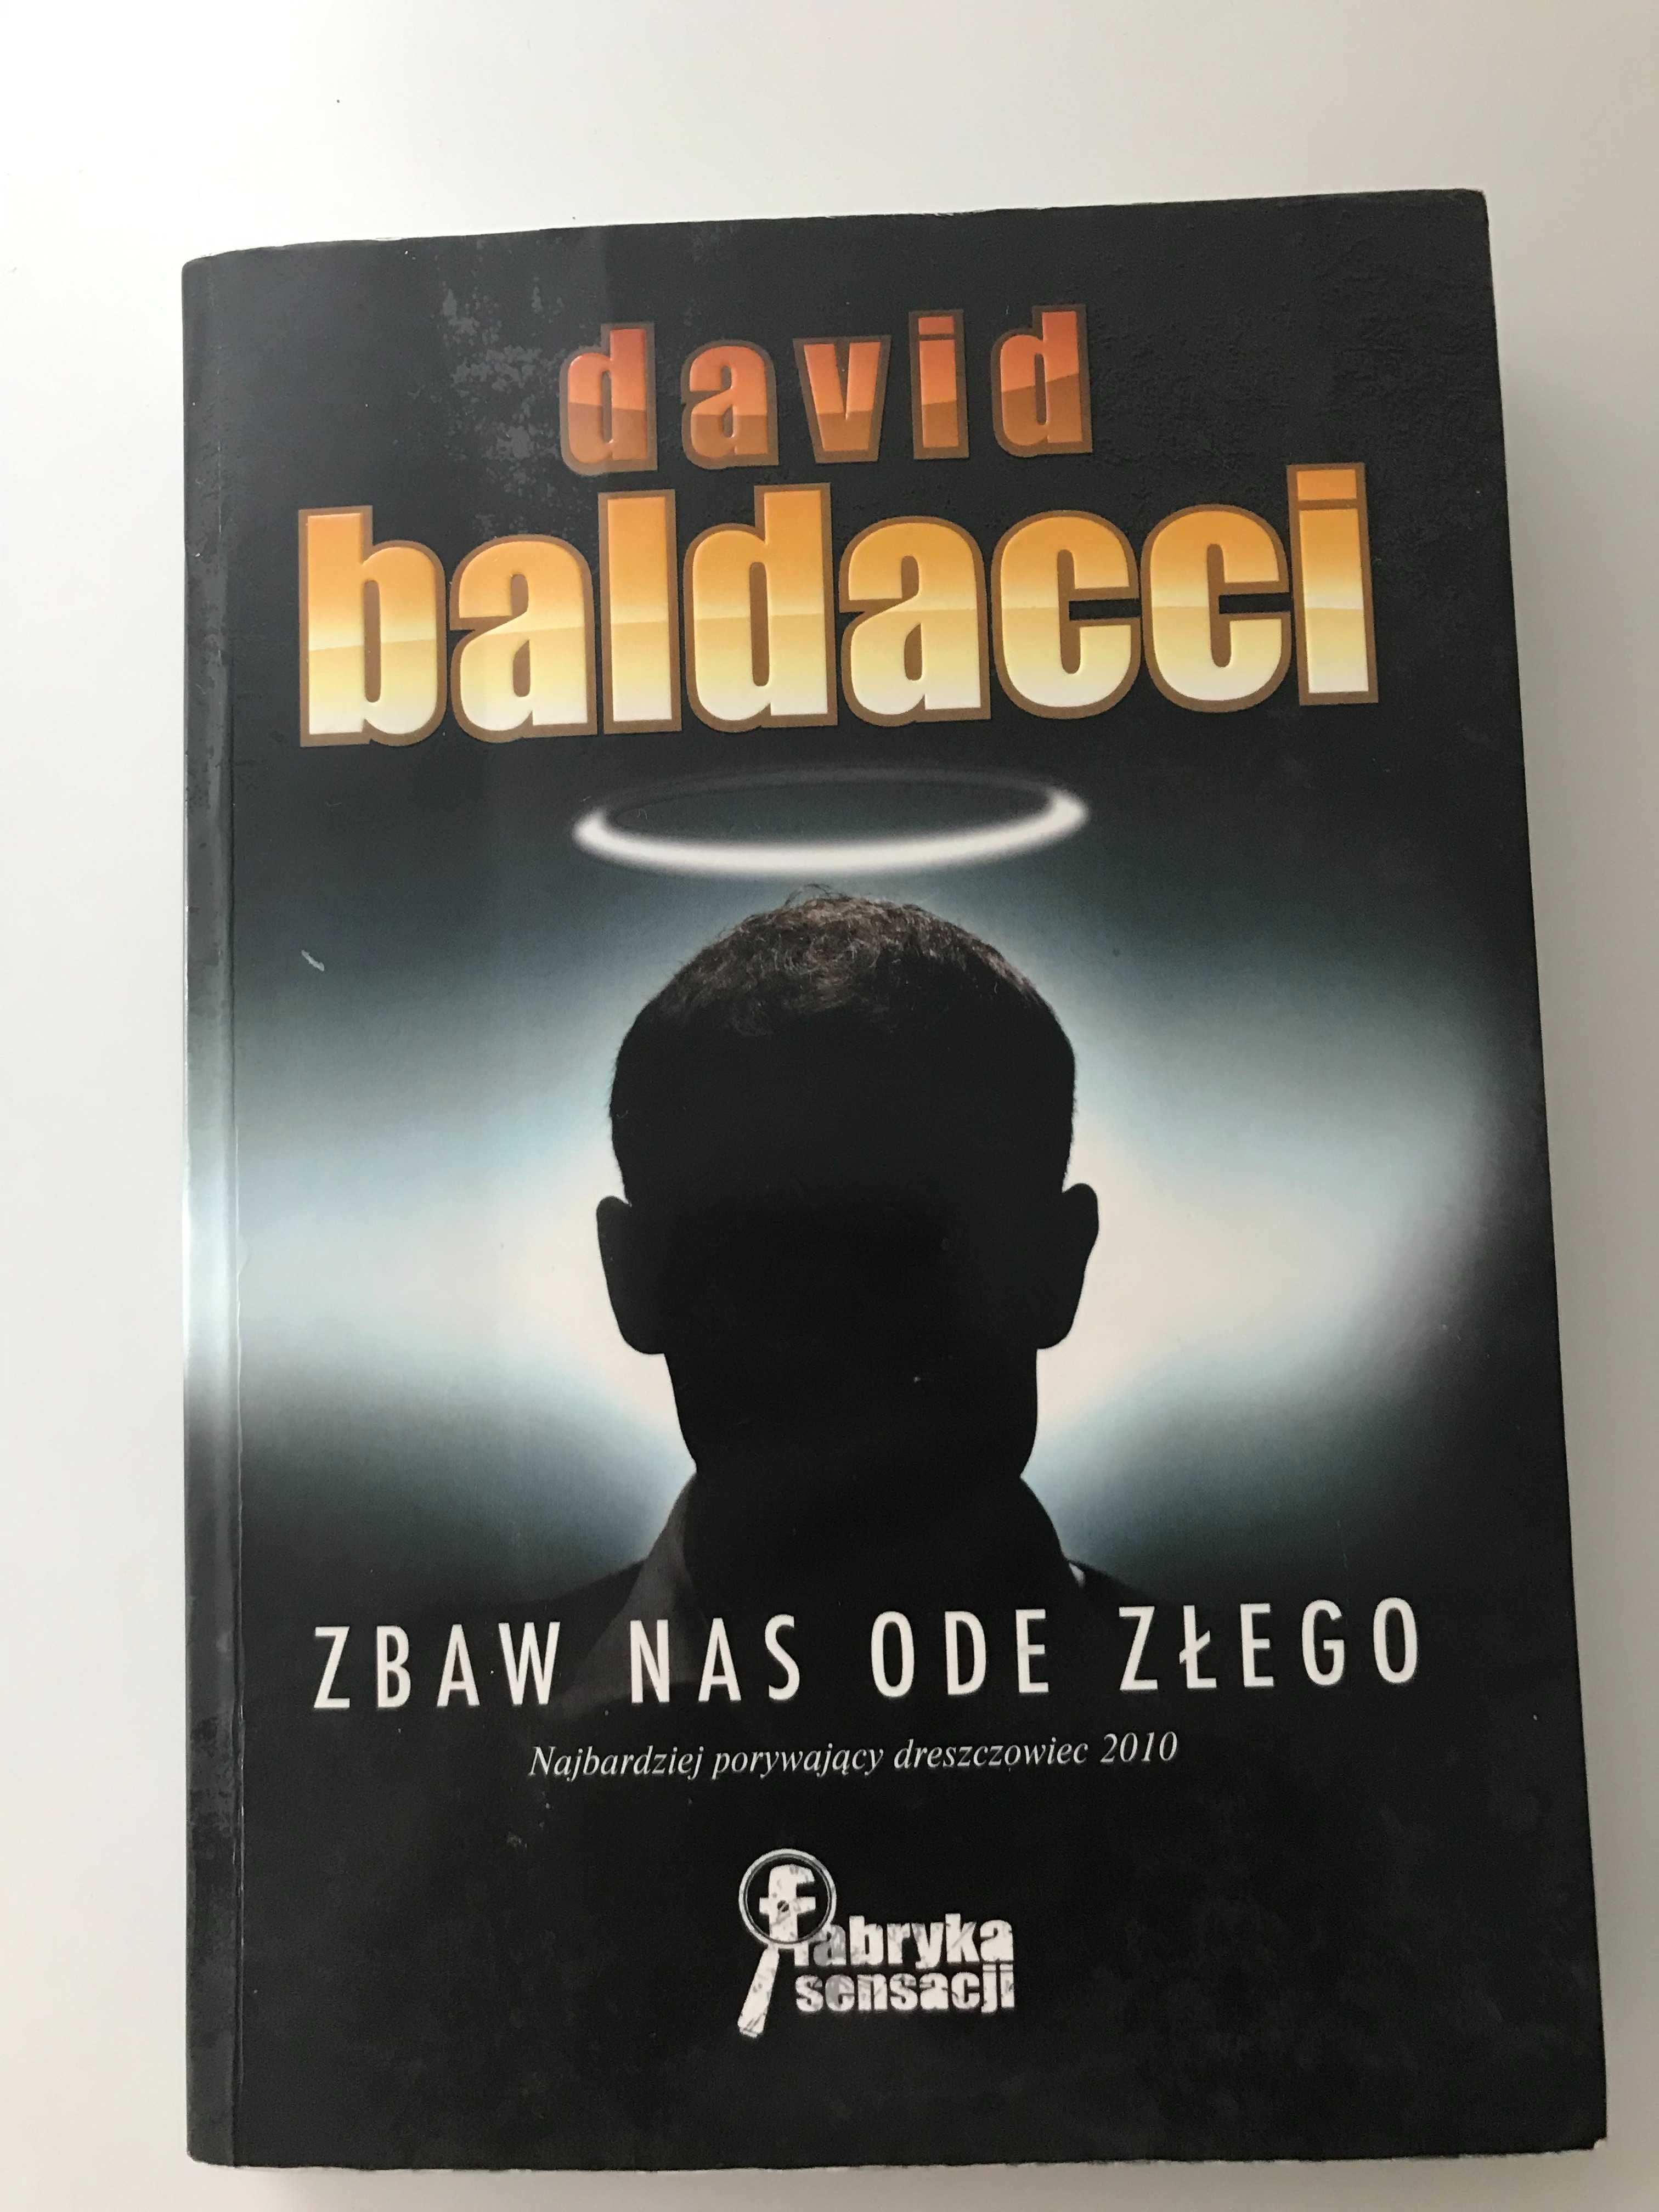 Książka "Zbaw nas ode złego" David Baldacci